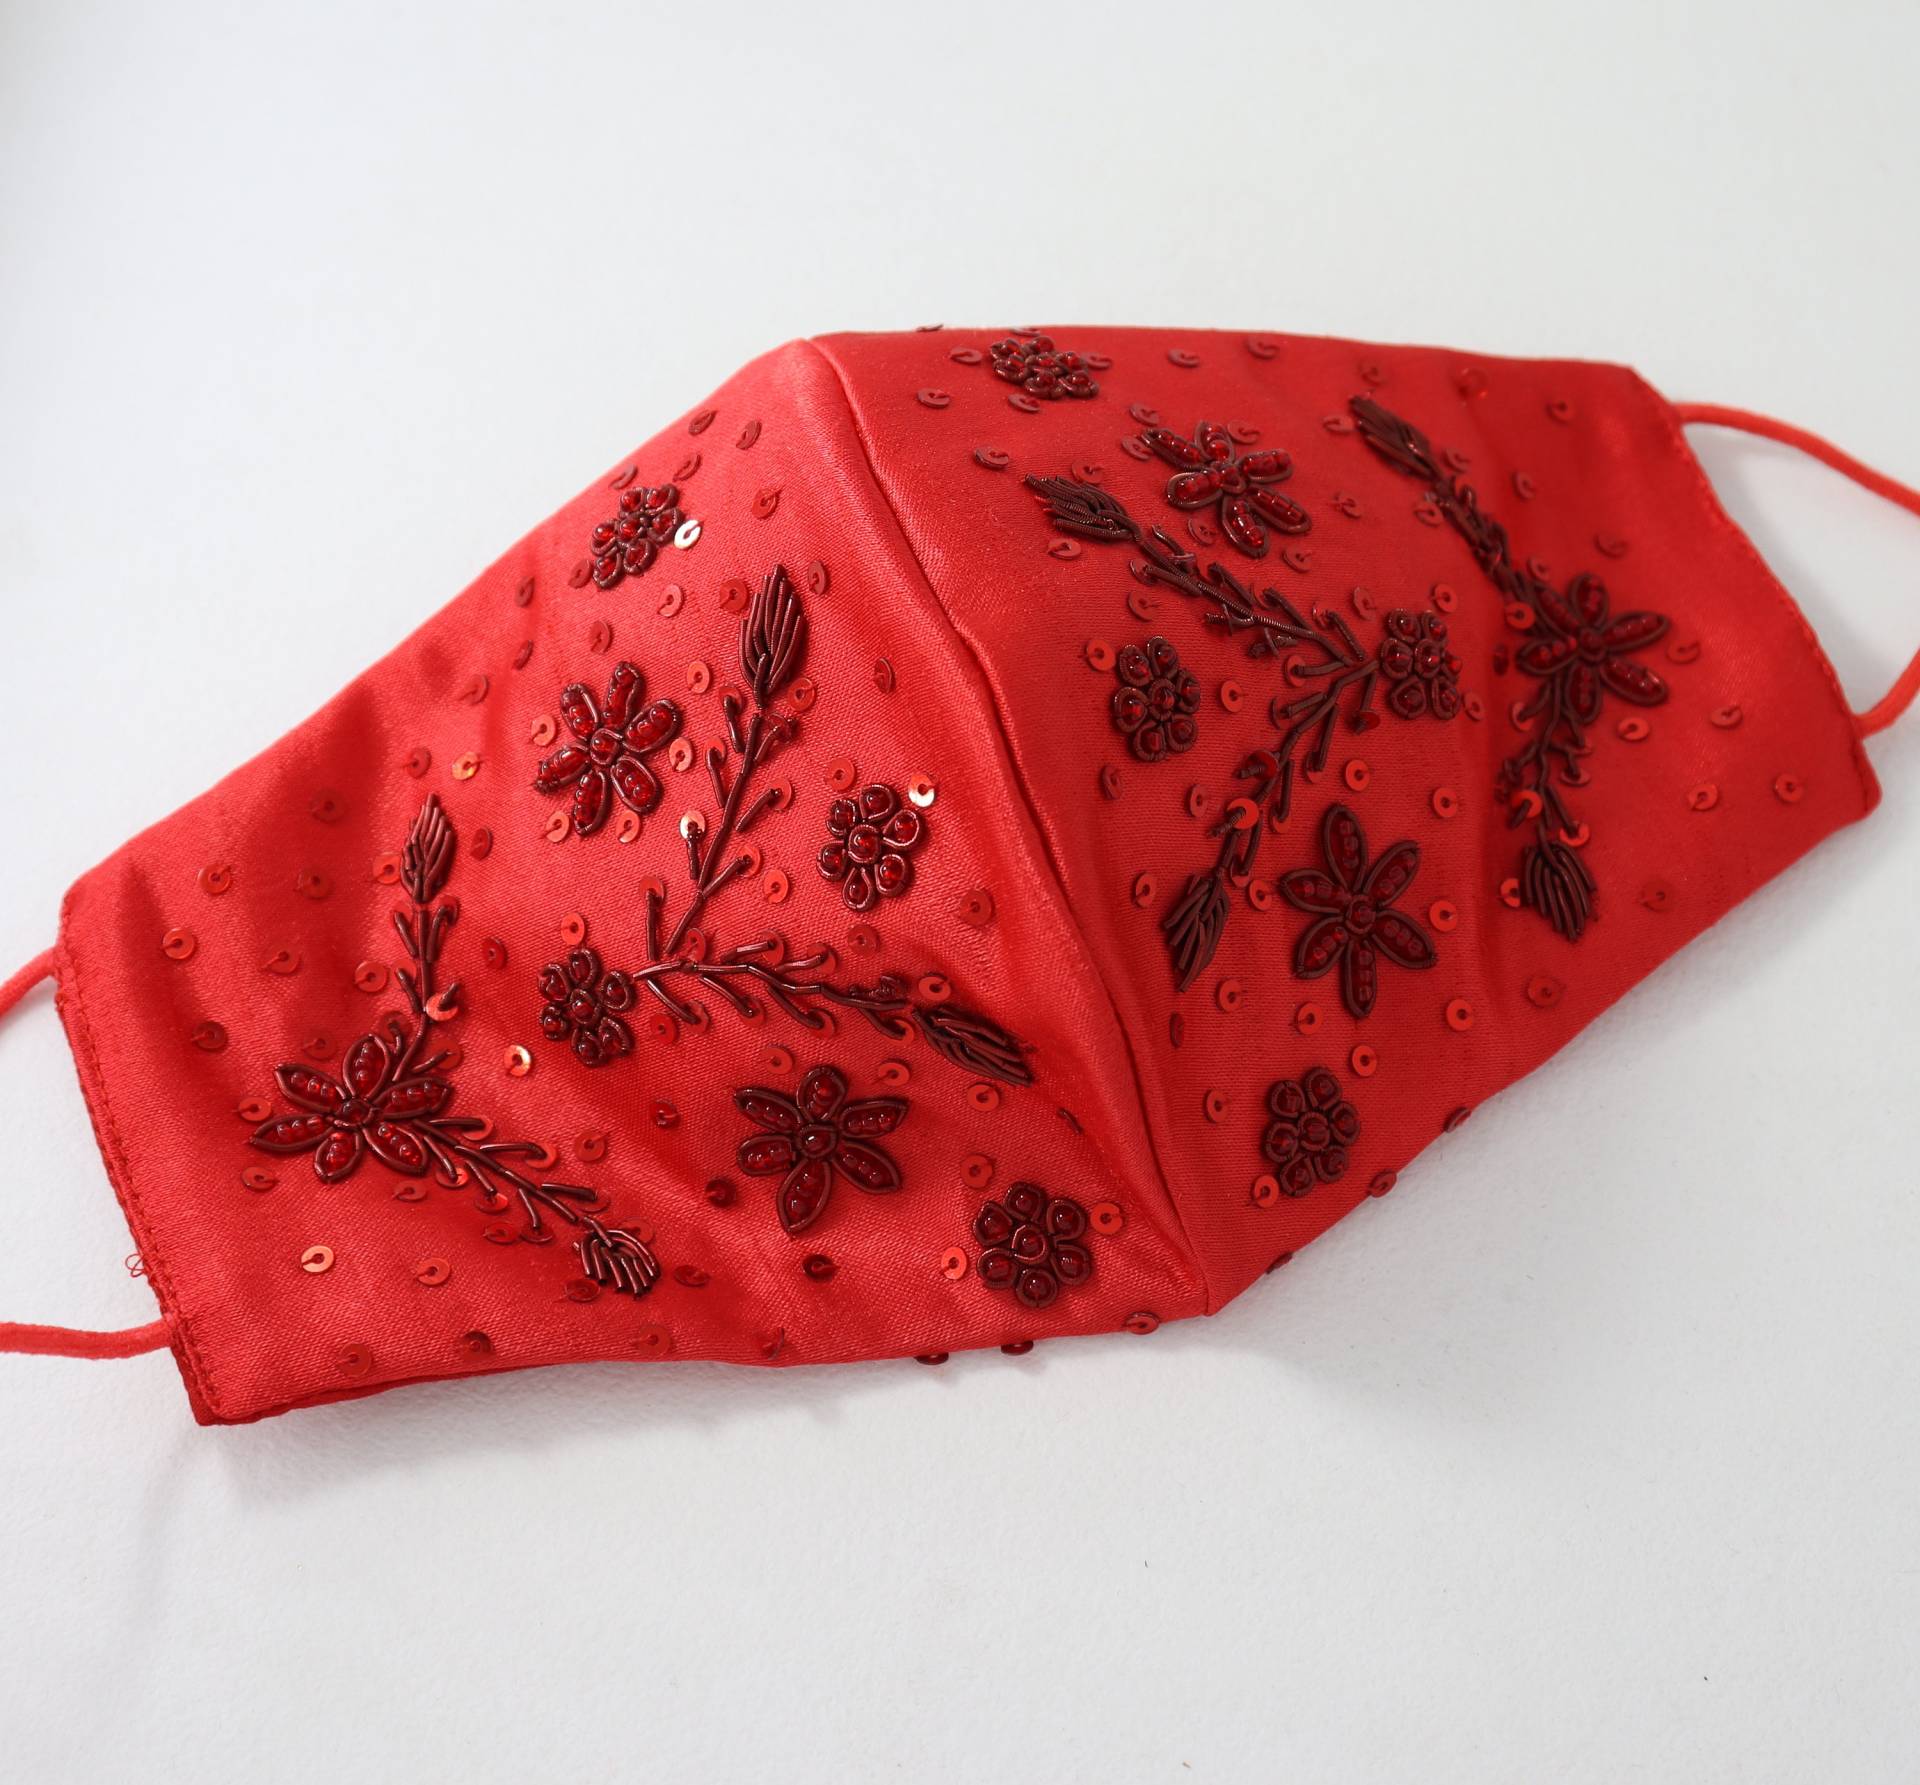 Weiche Satin Seide Designer Inspiriert Blumen Bestickt Rote Ausgefallene Gesichtsmaske Für Frau | Hand Sticken Schöne Abdeckung Hochzeitsmaske von Etsy - shubhams